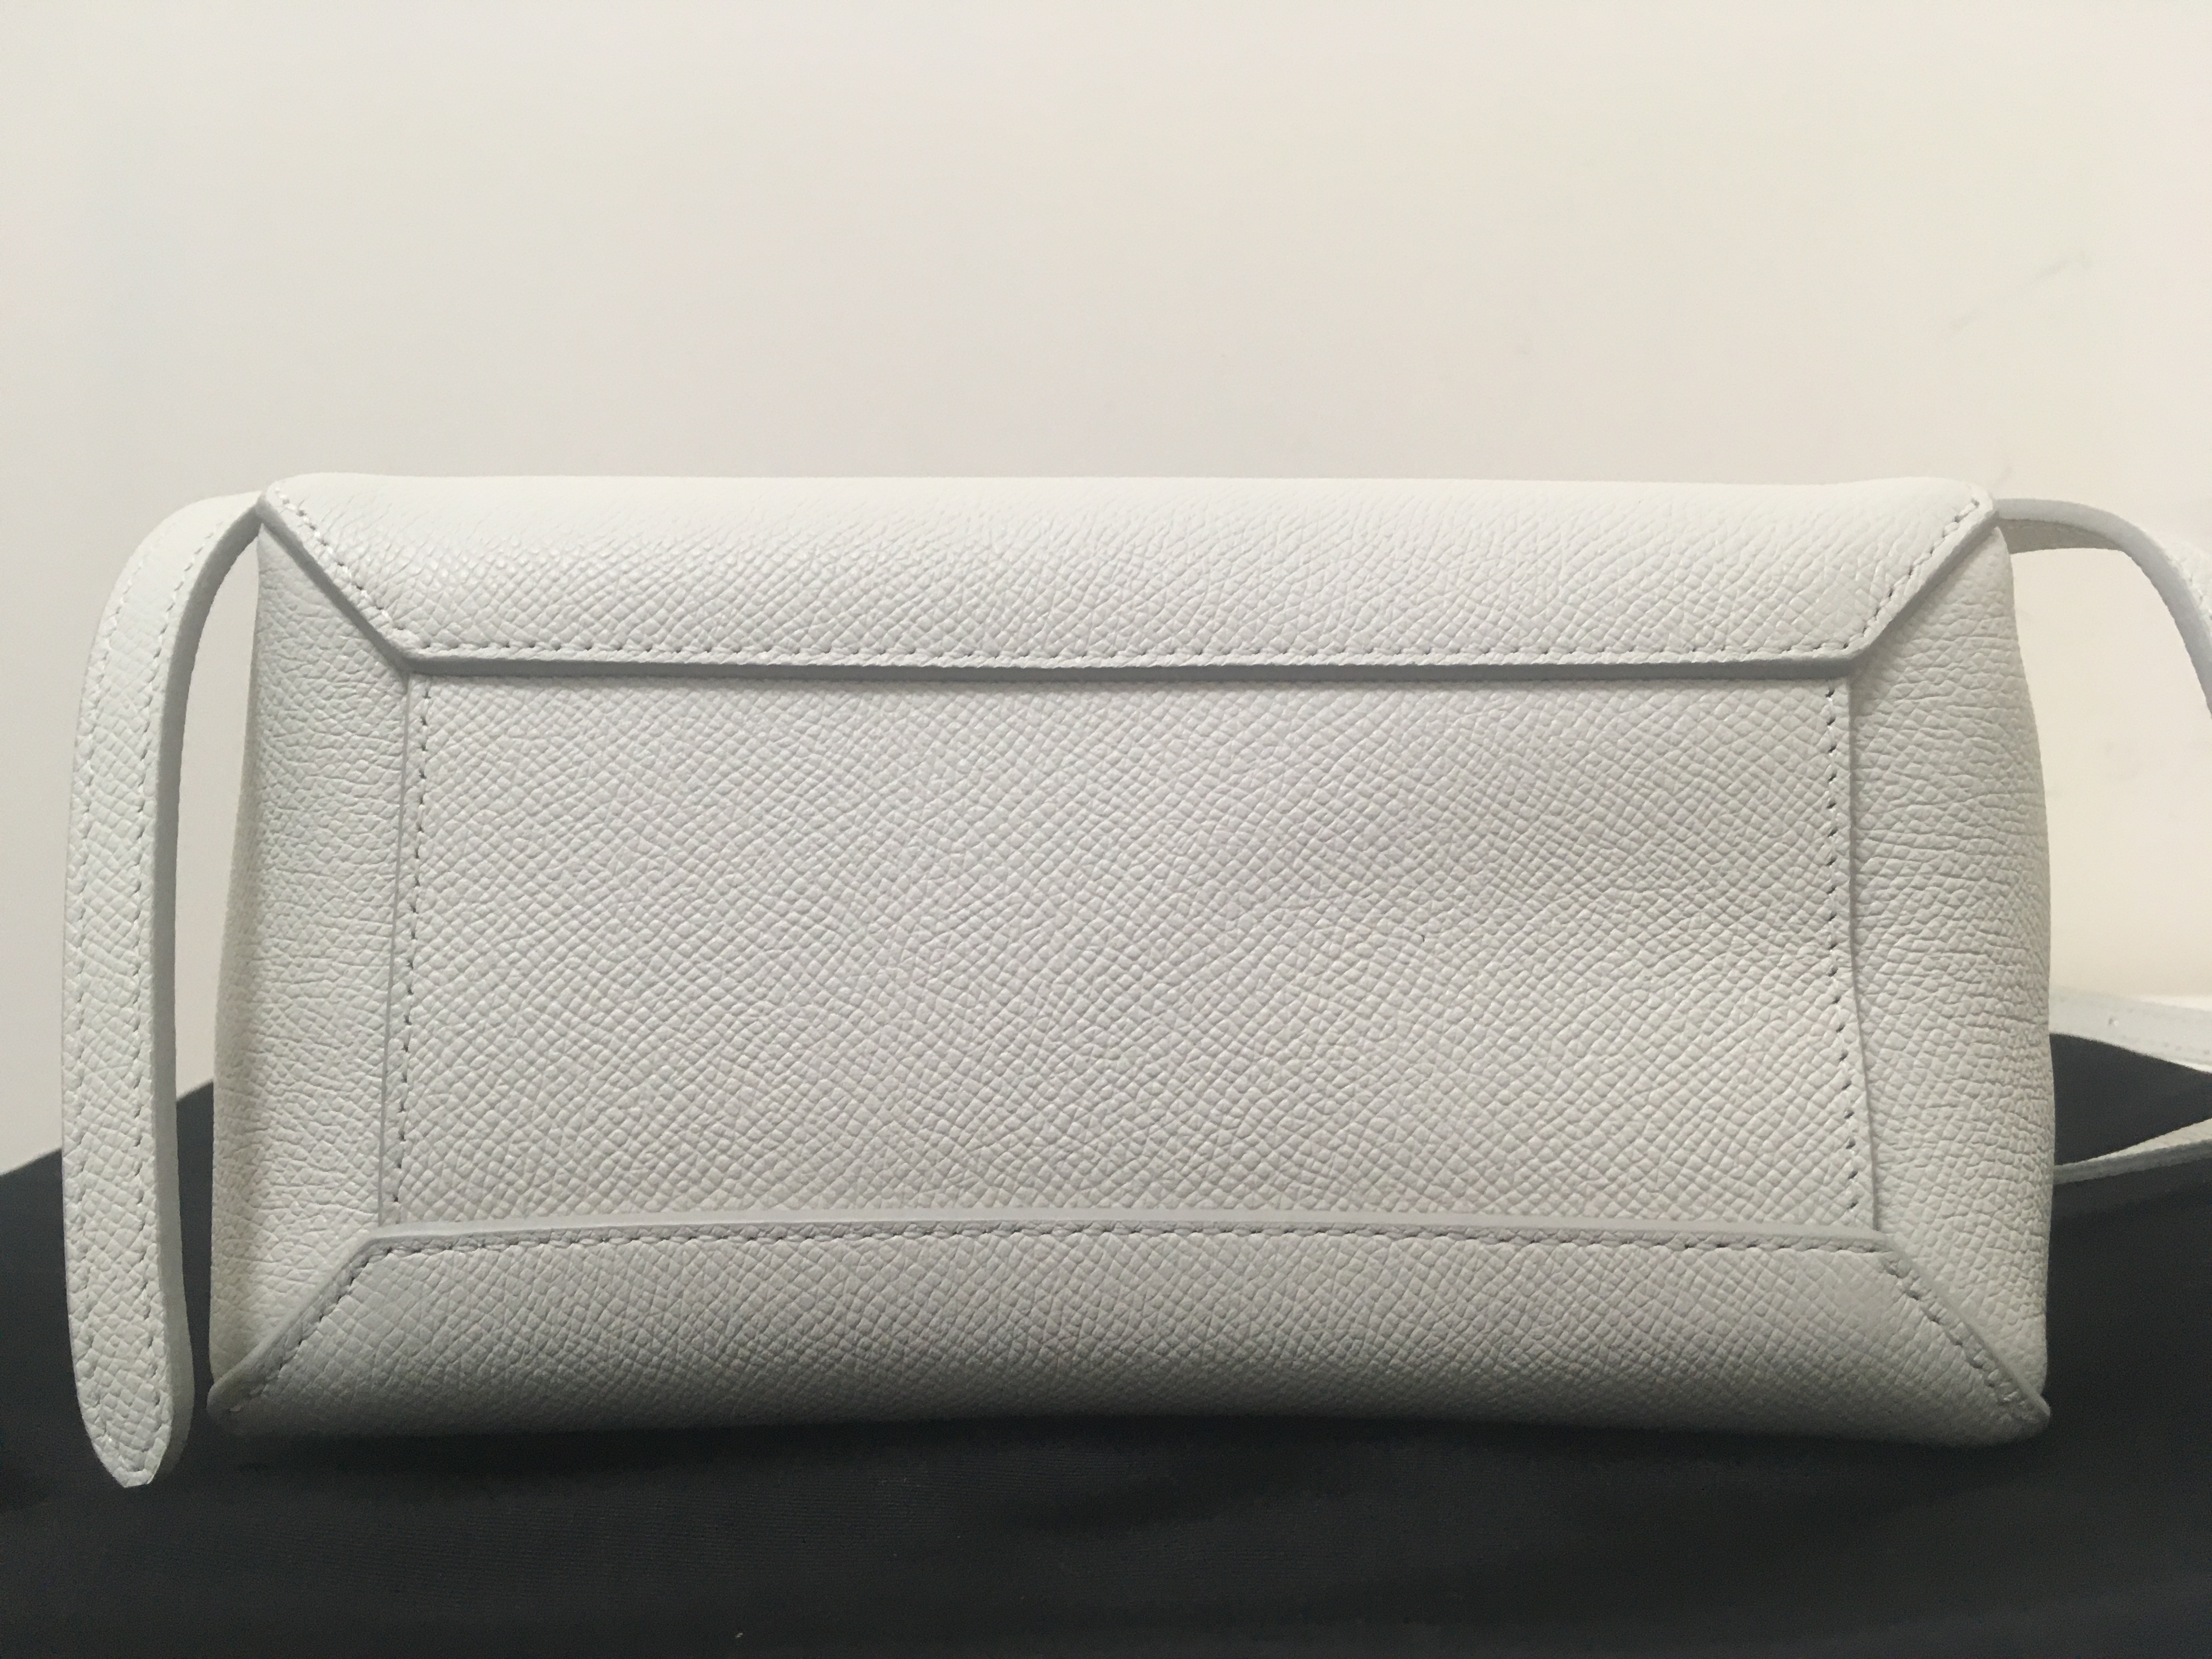 CELINE UNBOXING - Celine Belt Bag First Impression + What fits inside